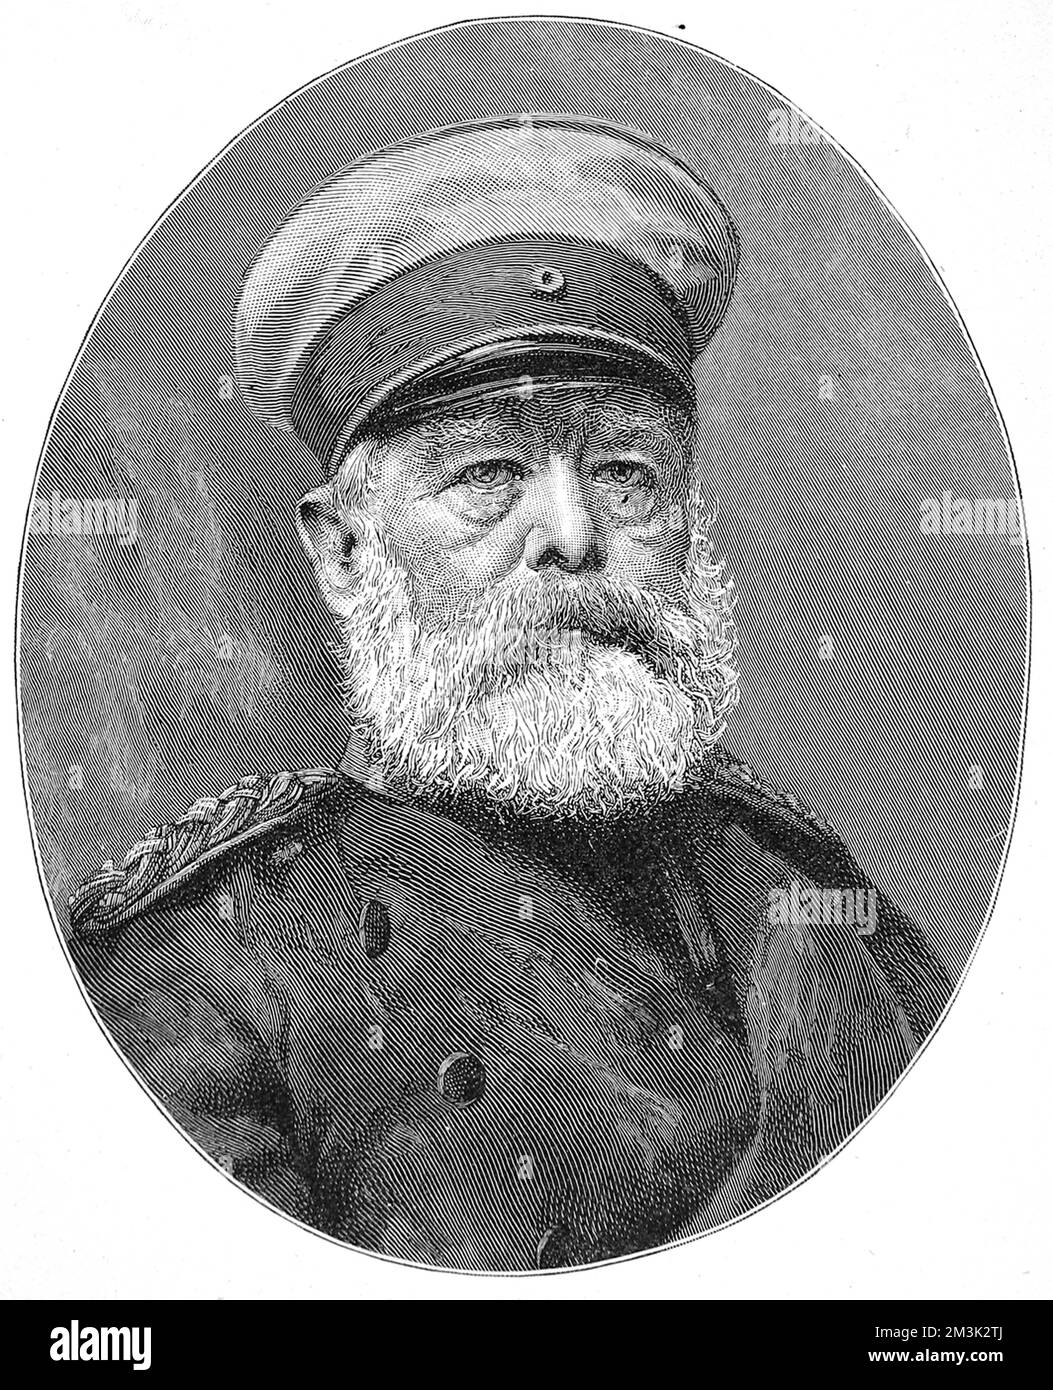 Il principe otto Edward Leopold von Bismarck, duca di Lauenburg (1815 - 1898), statista prusso-tedesca e primo cancelliere dell'Impero tedesco. Foto Stock